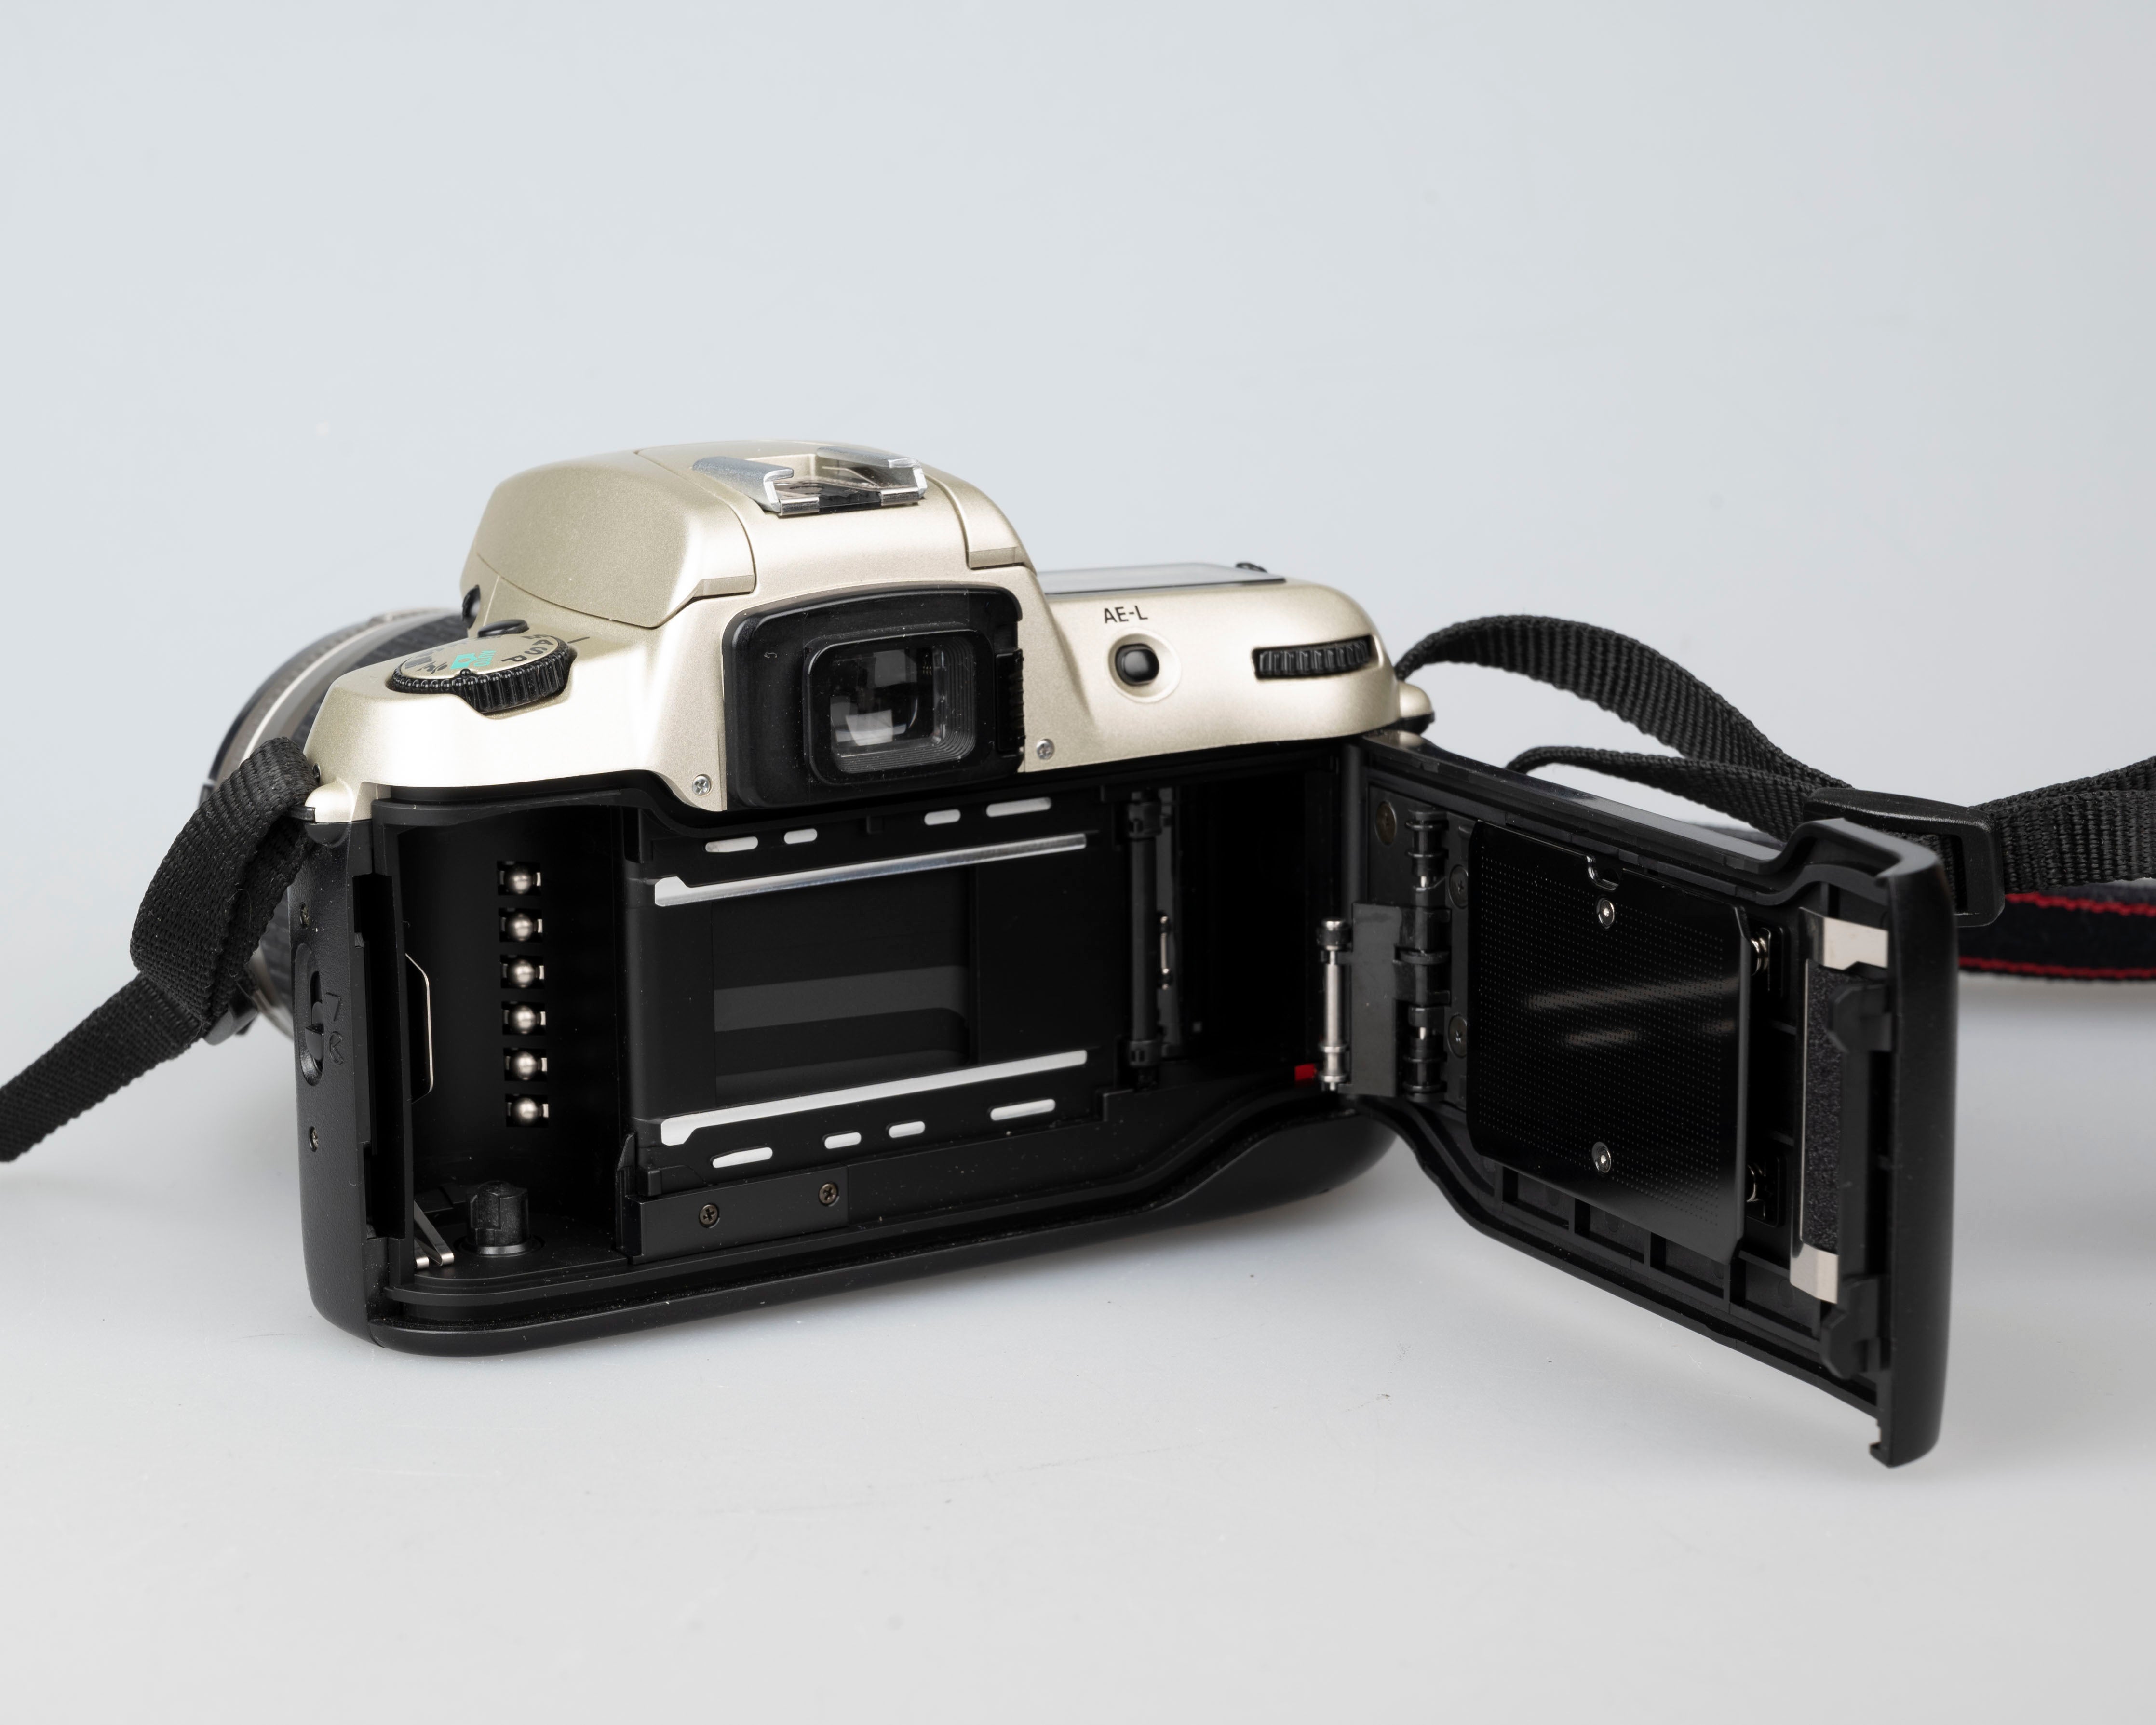 Nikon F60 35mm film SLR w/ AF Nikkor 28-80mm lens + manual (serial